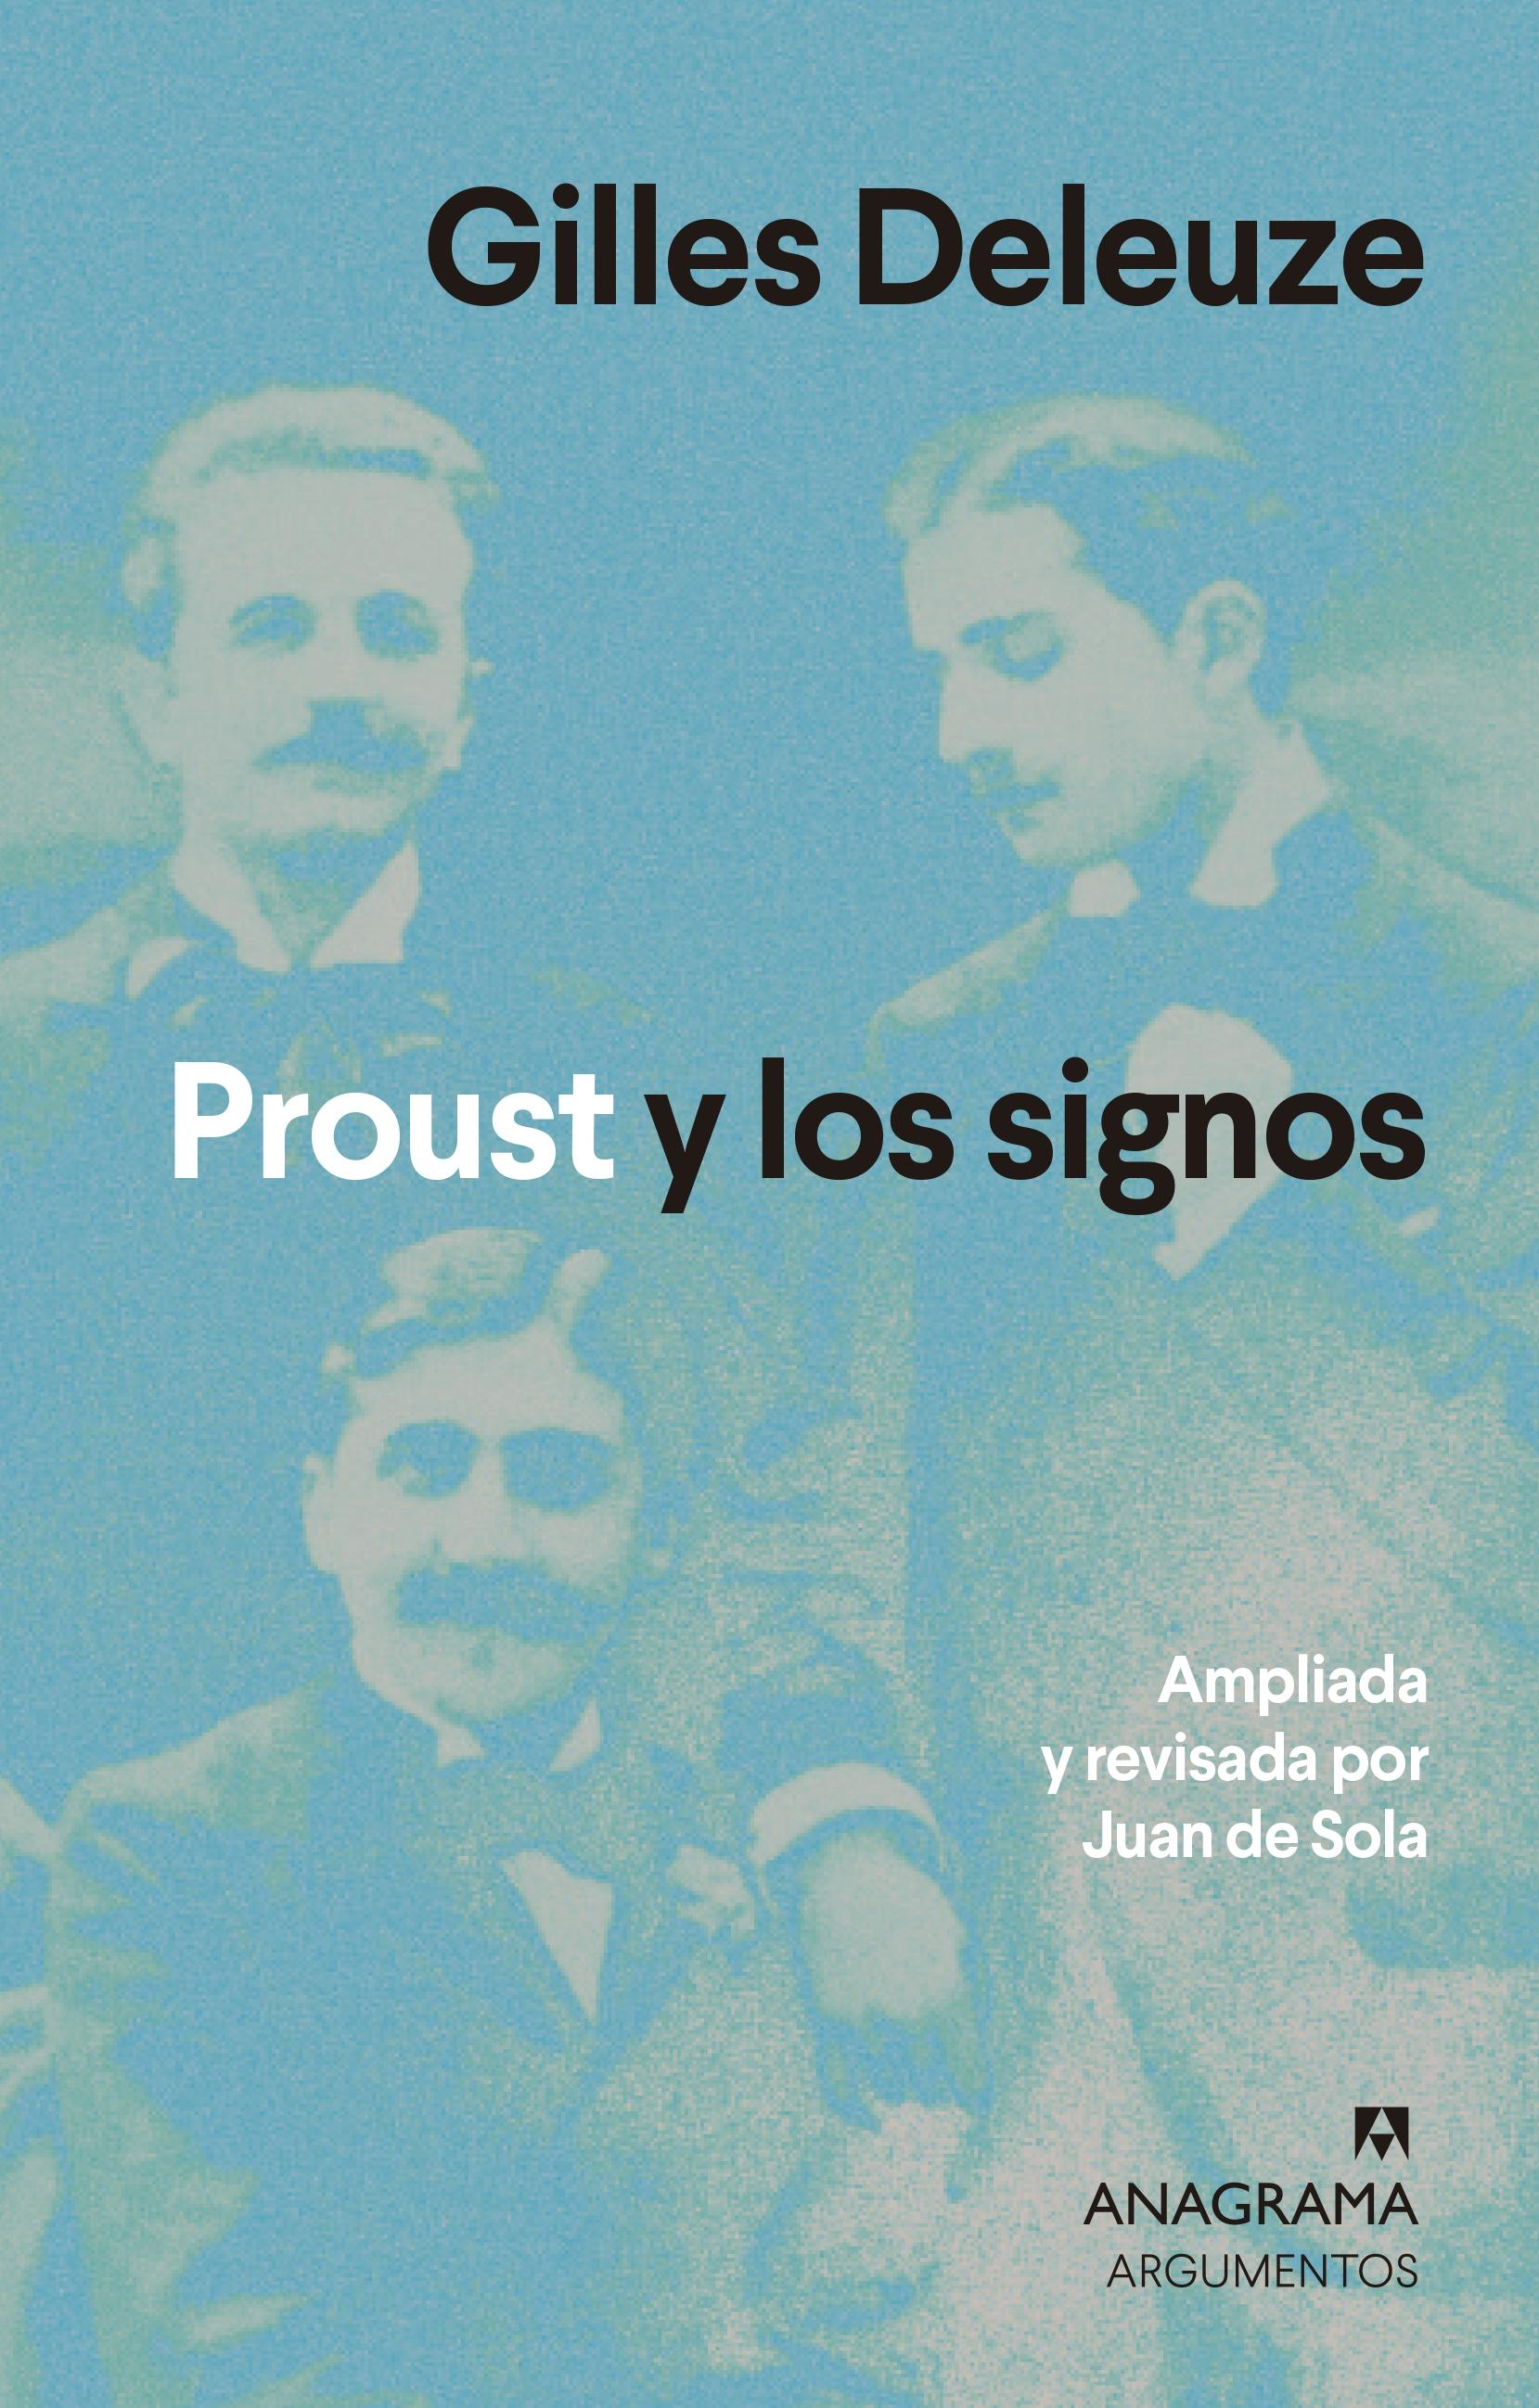 Proust y los signos "(Edición revisada y ampliada)". 